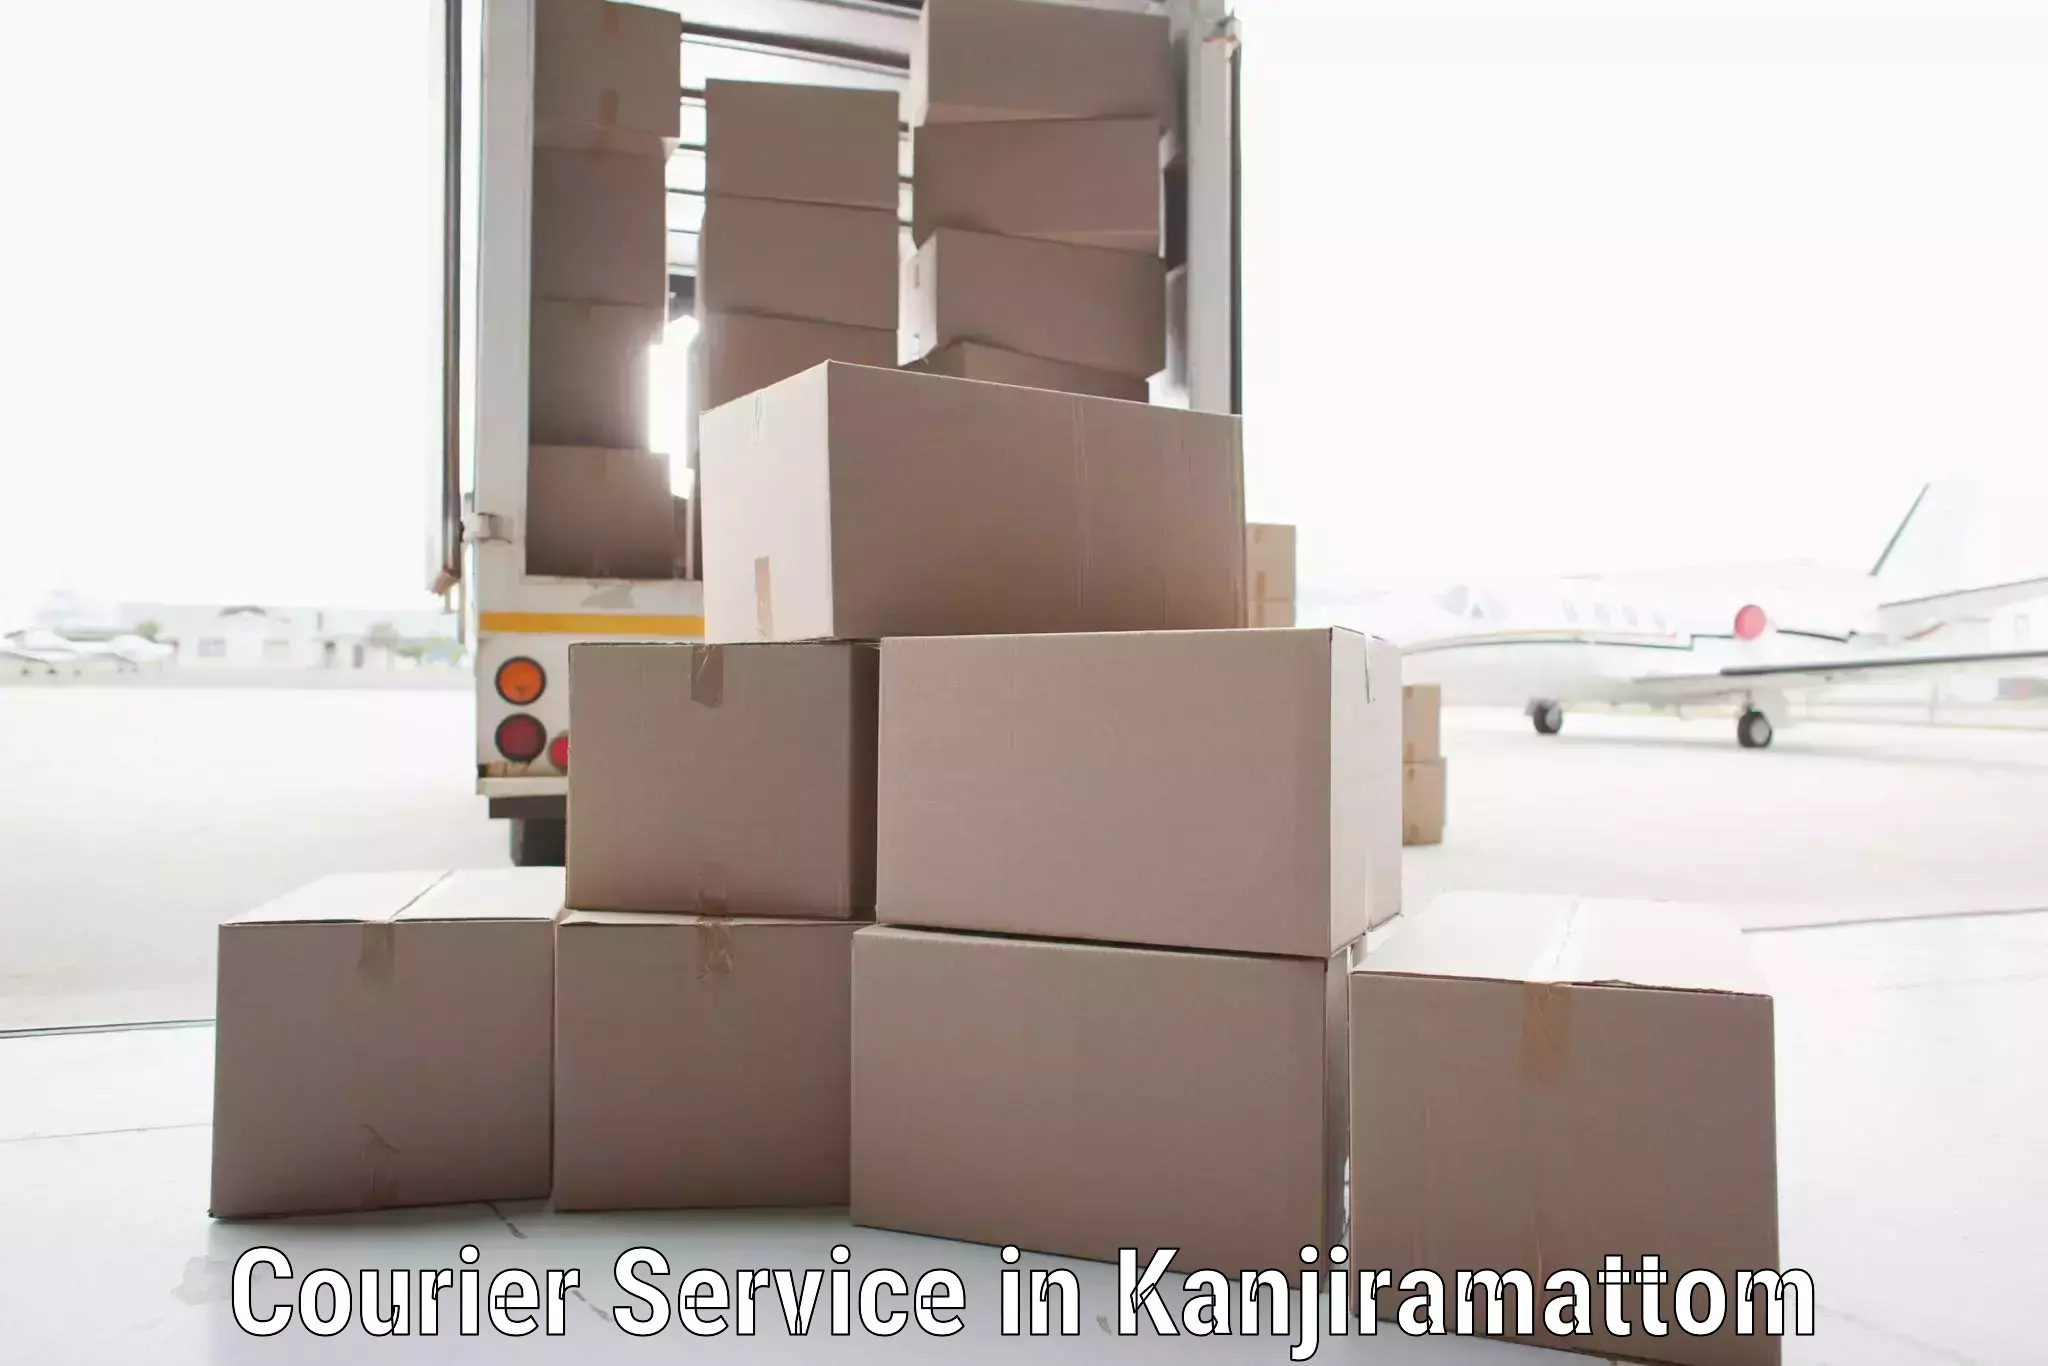 High-priority parcel service in Kanjiramattom